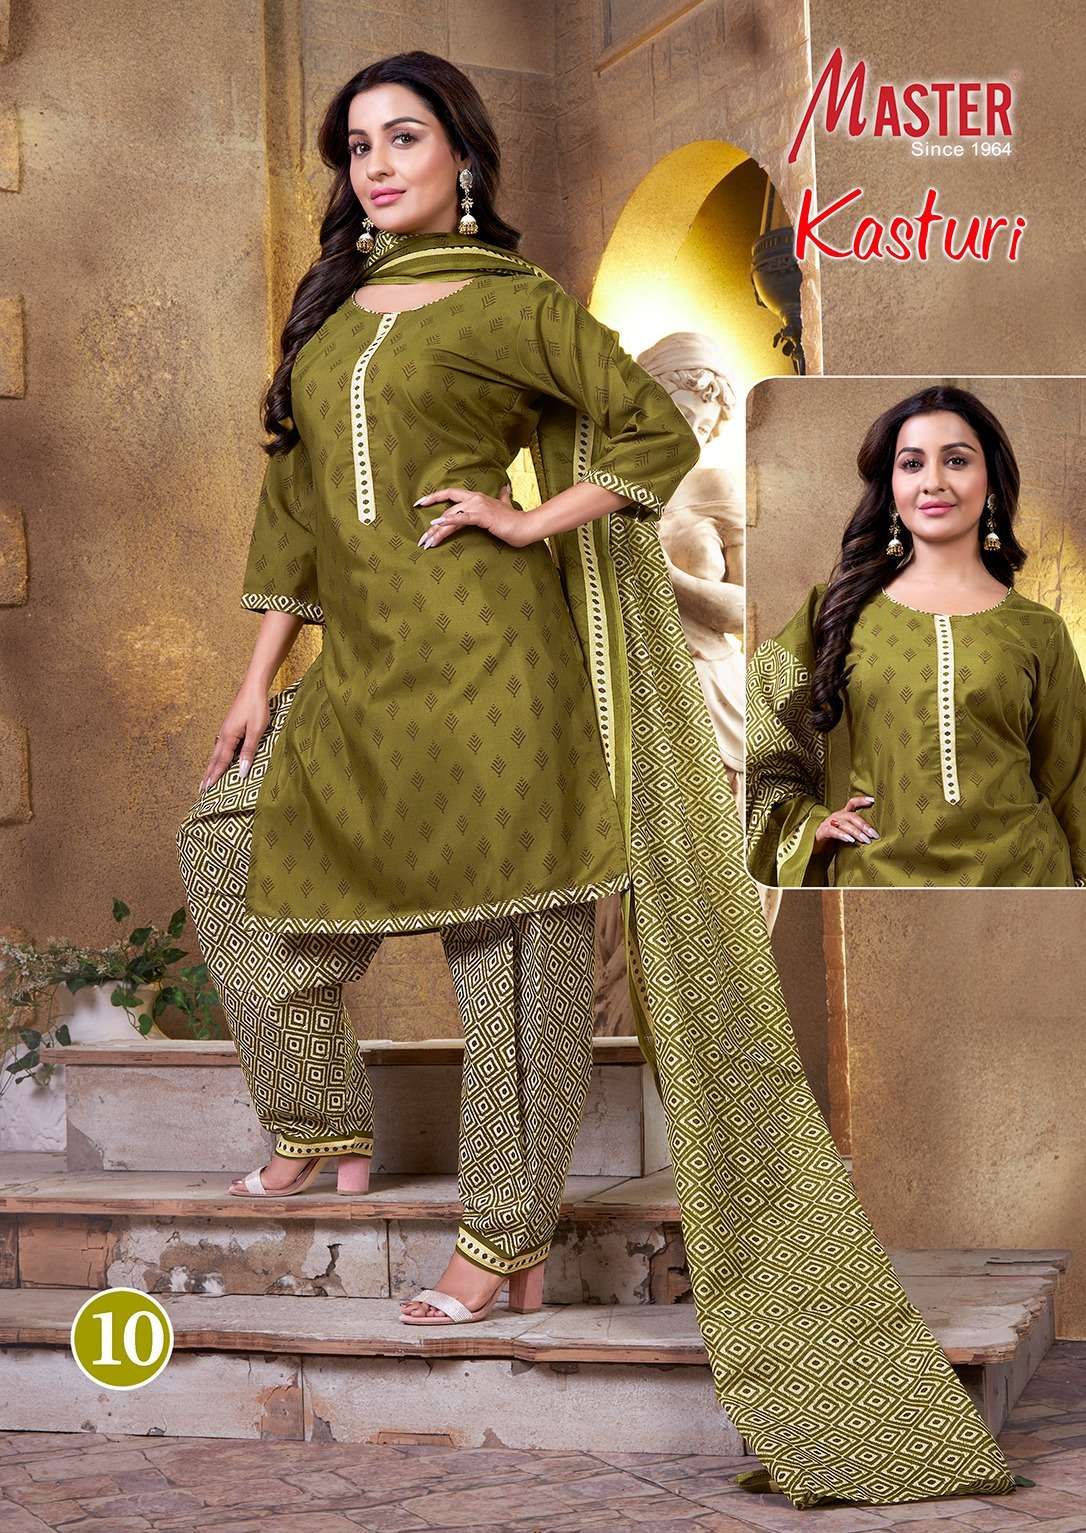 master kasturi 01-14 series designer cotton patiyala salwar kameez with dupatta wholesale price suit gujarat